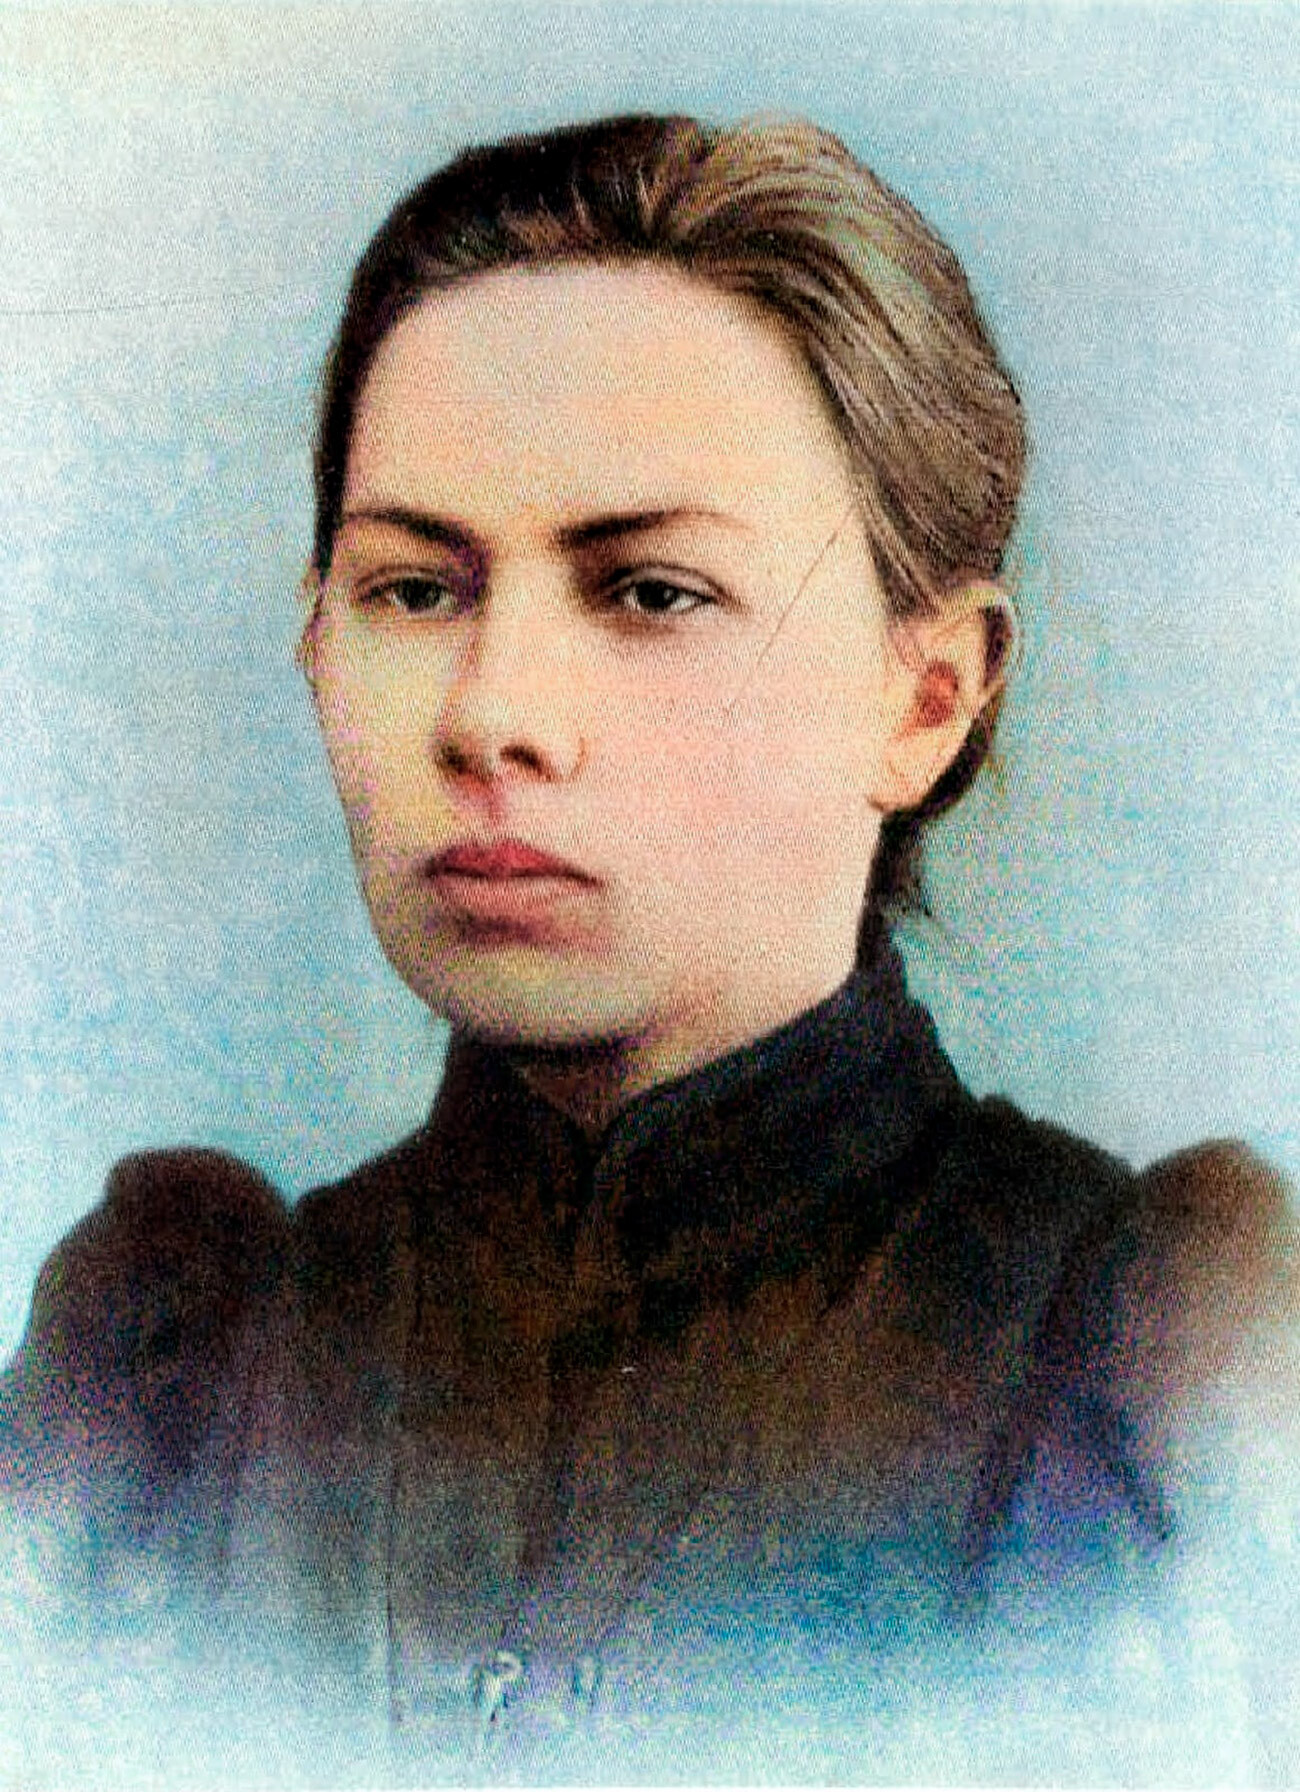 Nadezhda Krupskaya